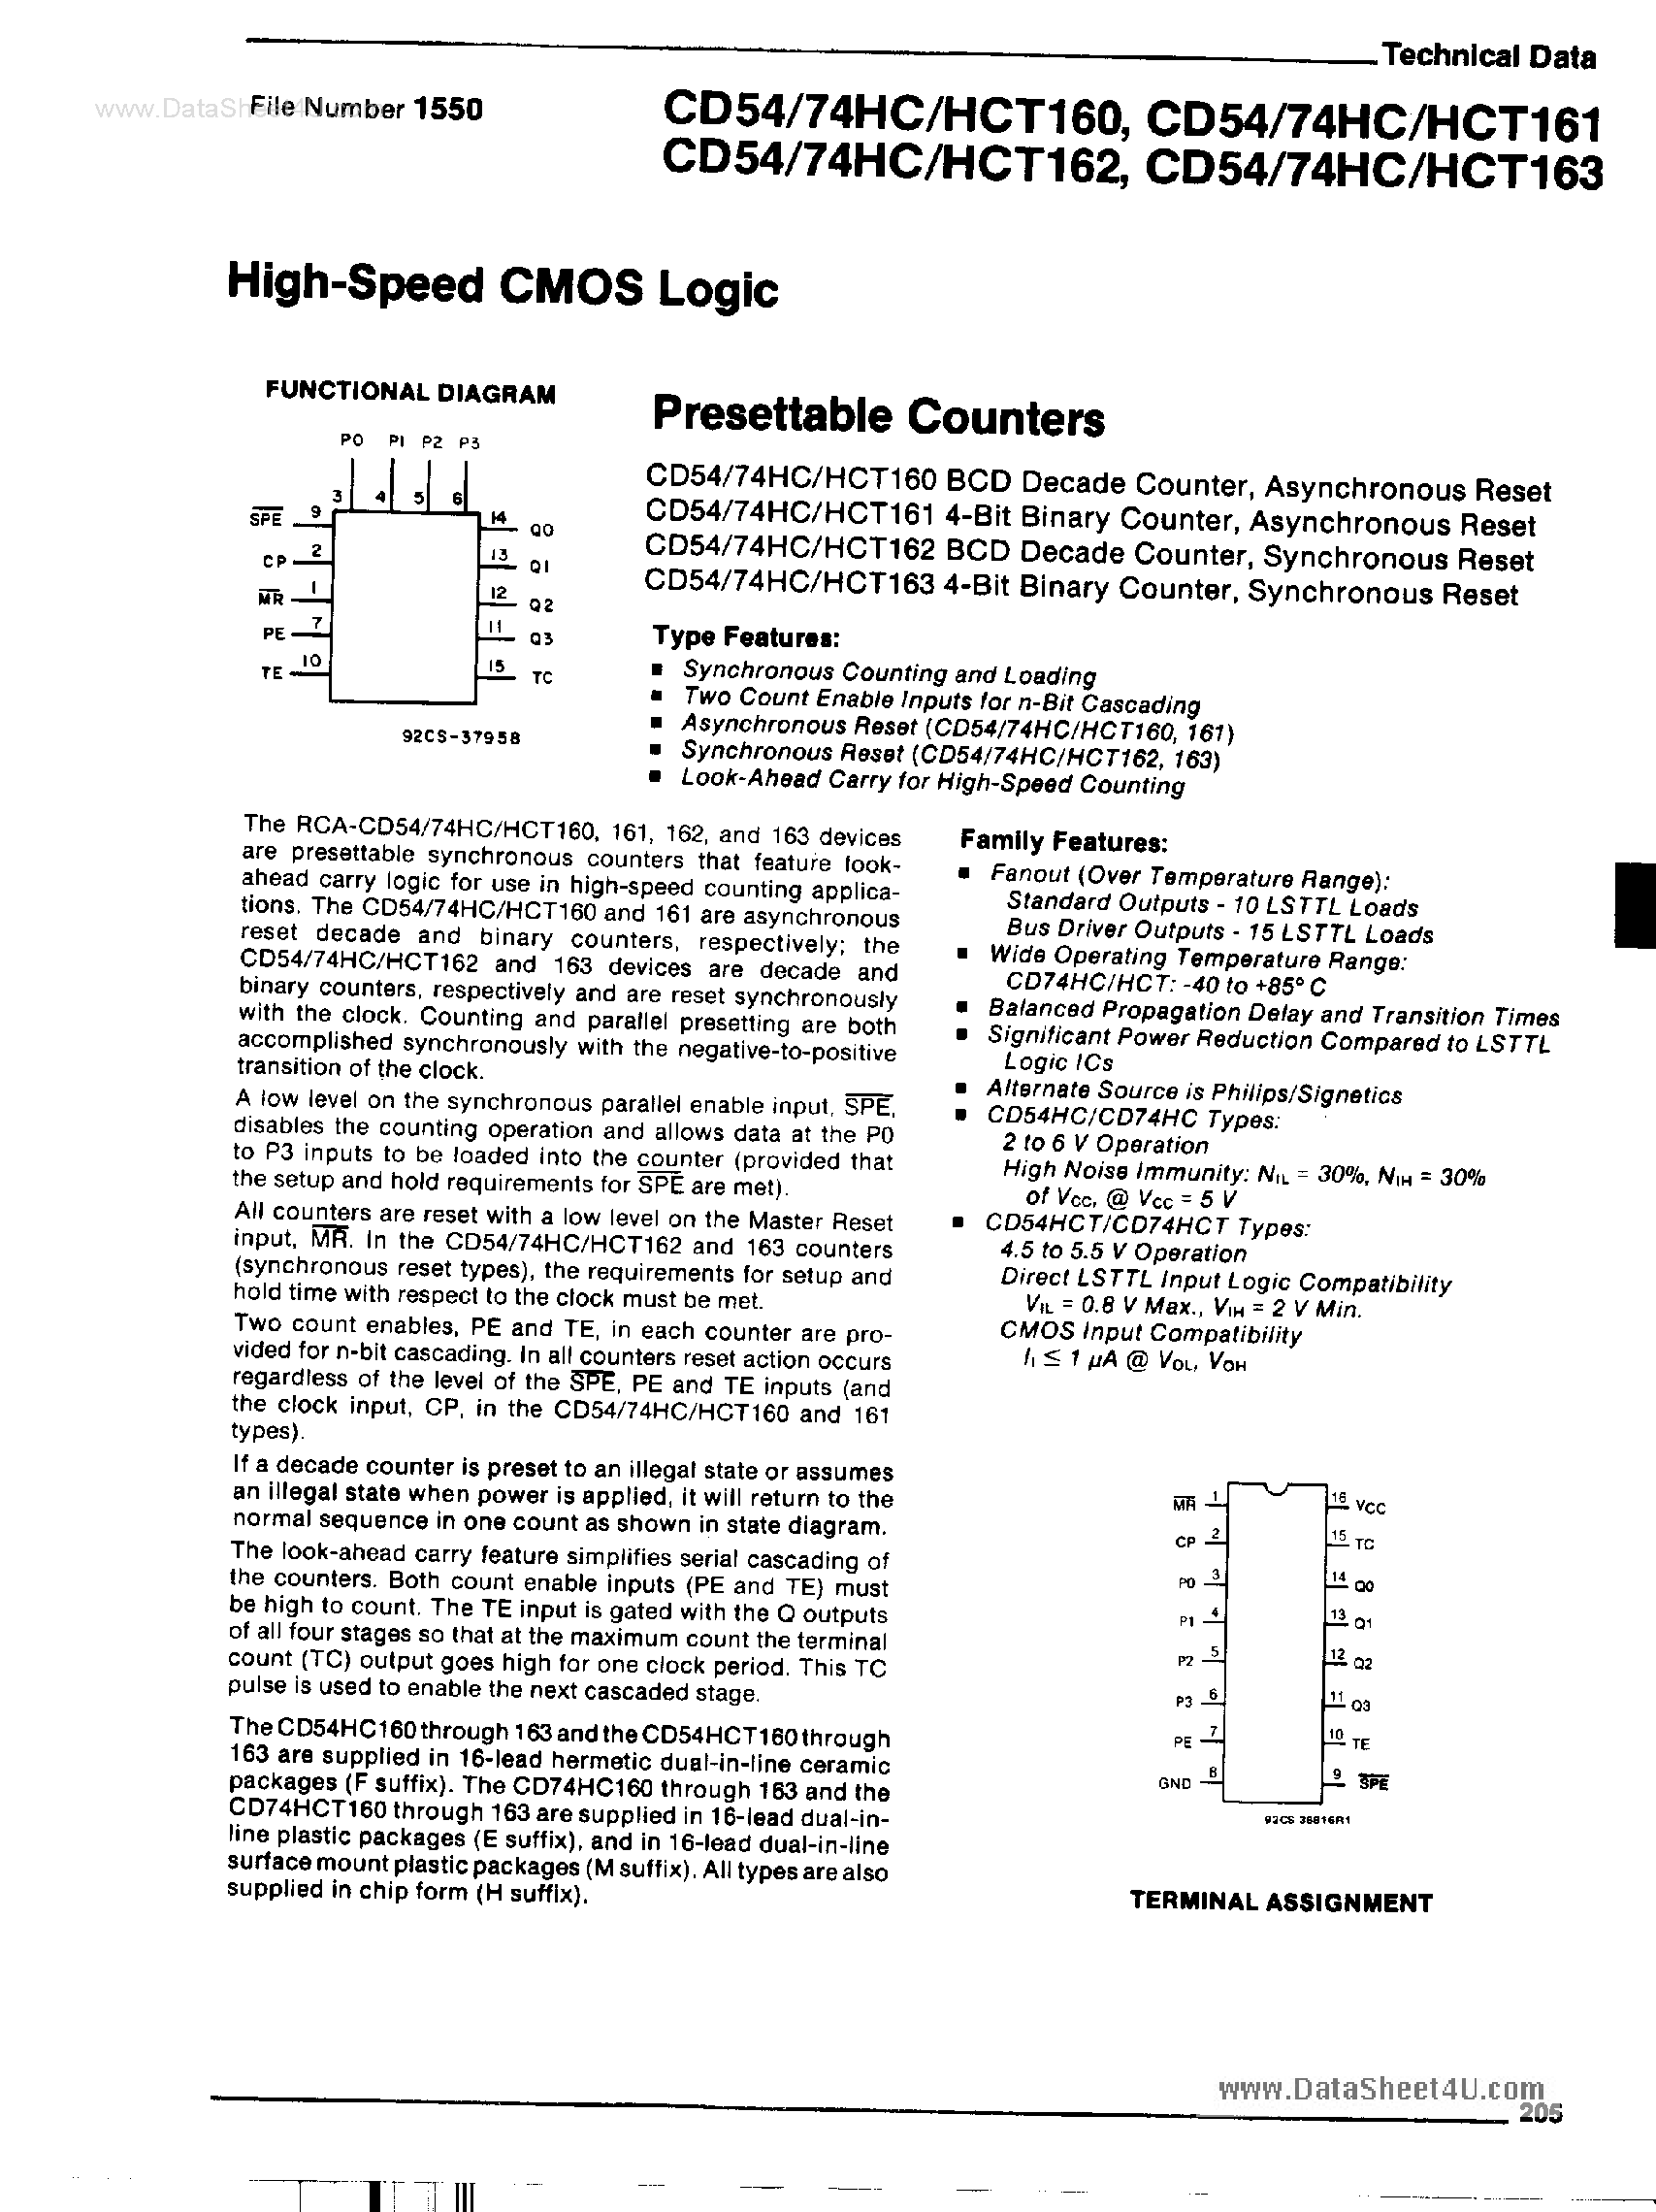 Datasheet CD54HC160 - (CD54HC160 - CD54HC163) High Speed CMOS Logic page 1